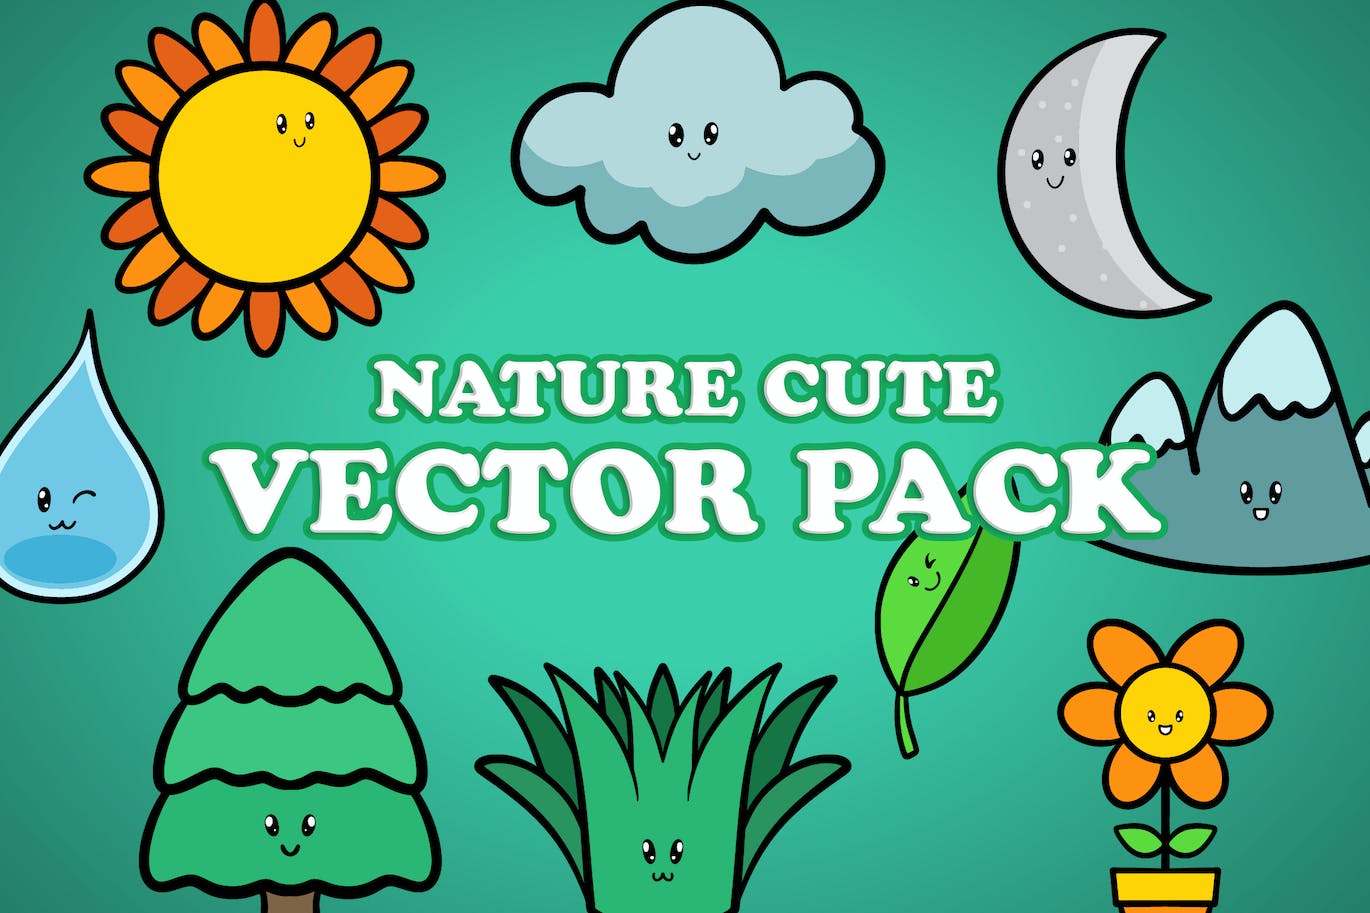 可爱的自然元素矢量插画素材 Cute Nature Element Character Vector Pack-1